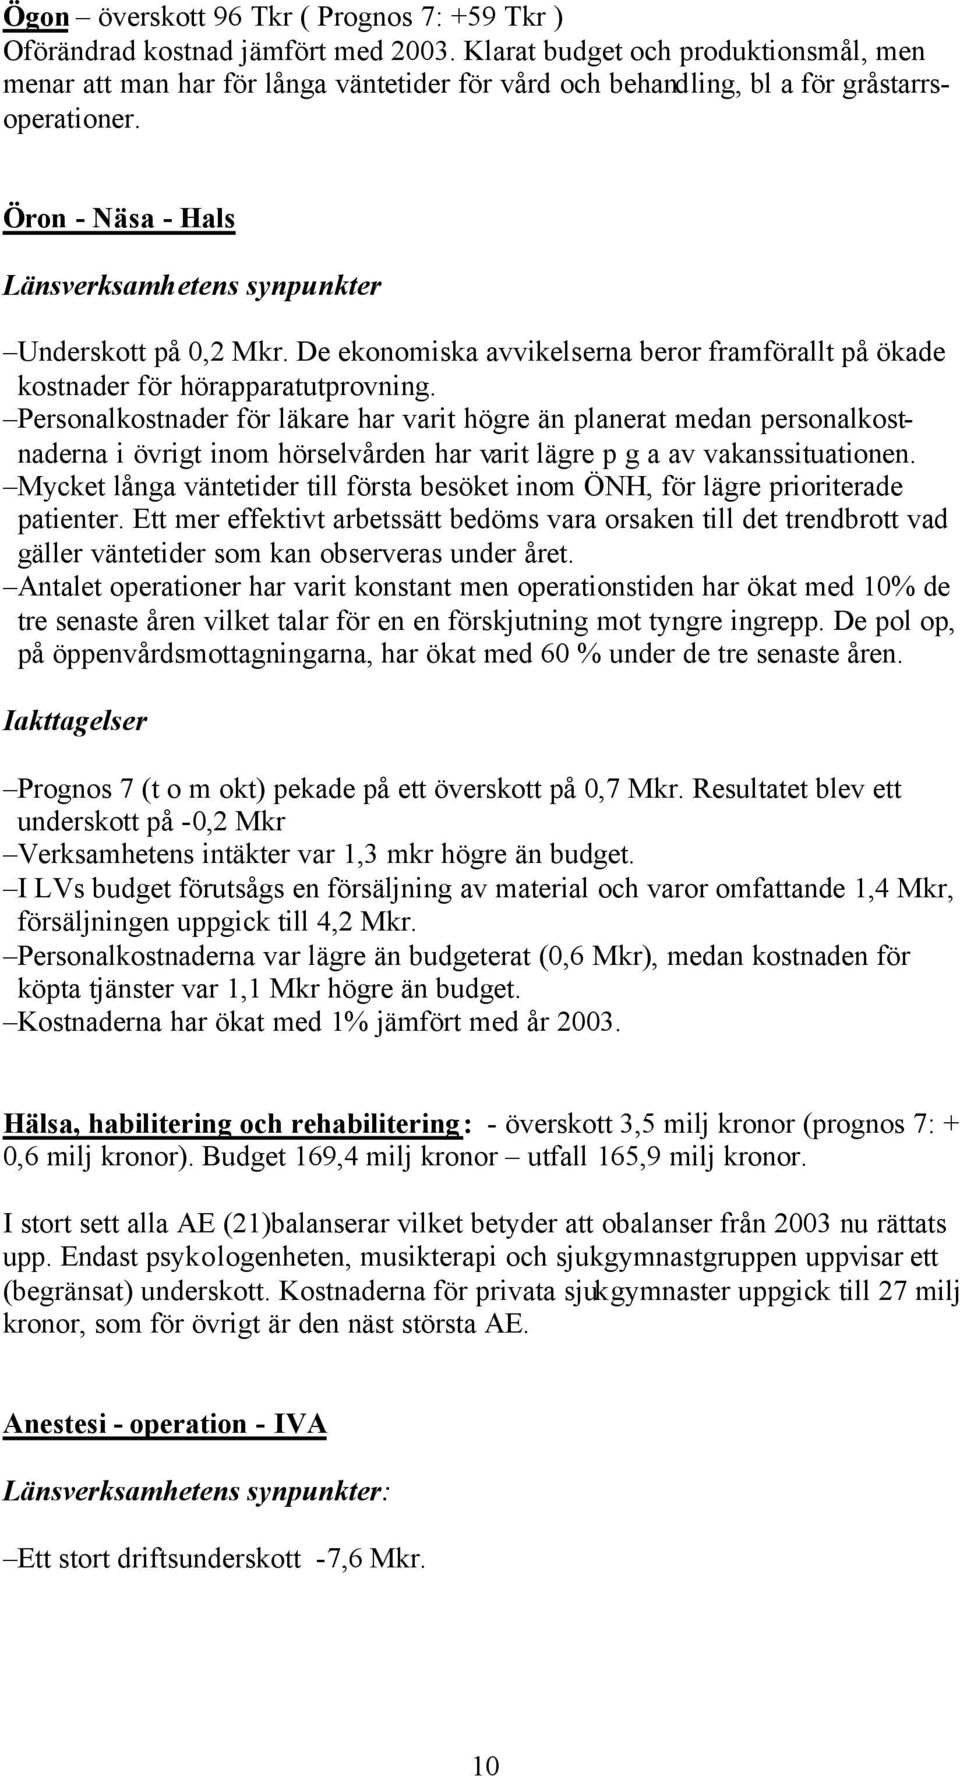 Öron - Näsa - Hals Länsverksamhetens synpunkter Underskott på 0,2 Mkr. De ekonomiska avvikelserna beror framförallt på ökade kostnader för hörapparatutprovning.